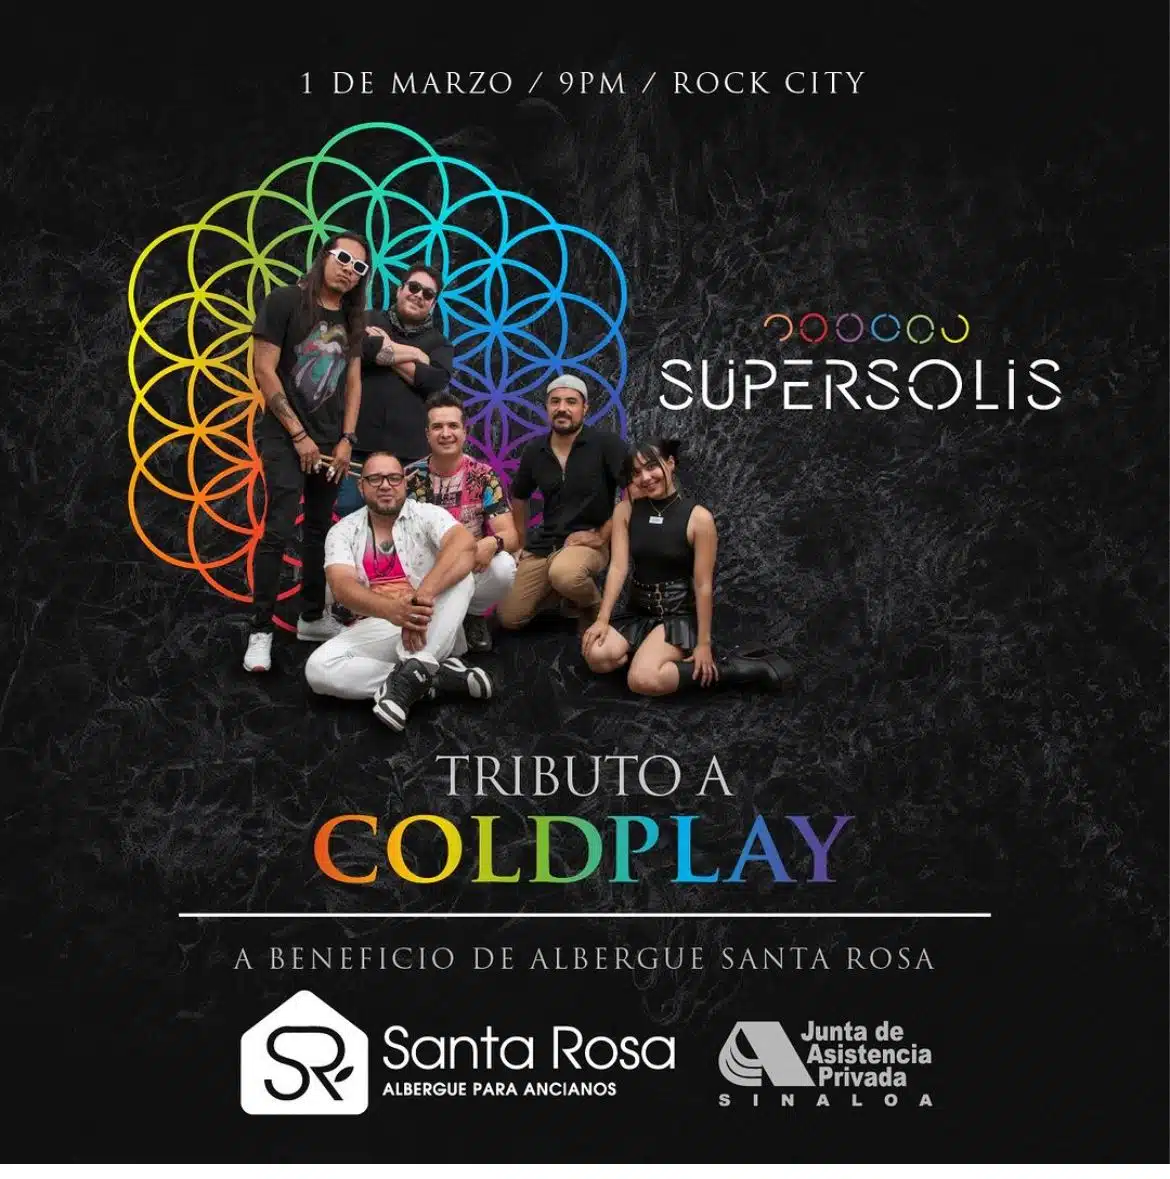 Supersolis, banda tributo a Coldplay, está organizando un evento con causa para apoyar al albergue Santa Rosa.